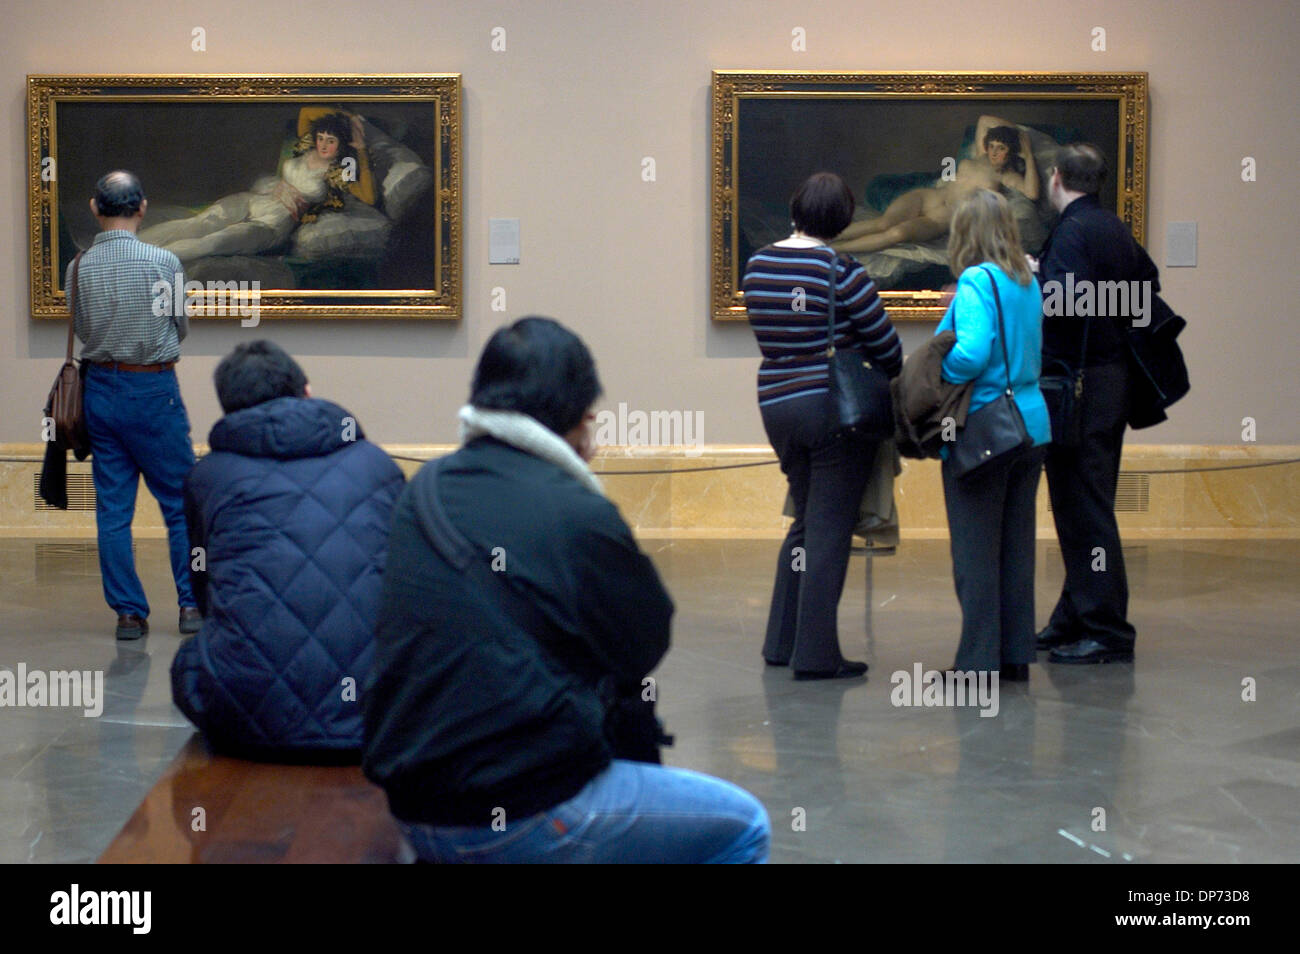 Nov 01, 2006; Madrid, España; el Museo de El Prado. Un grupo ot ot los  turistas que visitan el Museo del Prado (Palacio de Villanueva) y observar  las pinturas de Goya, La